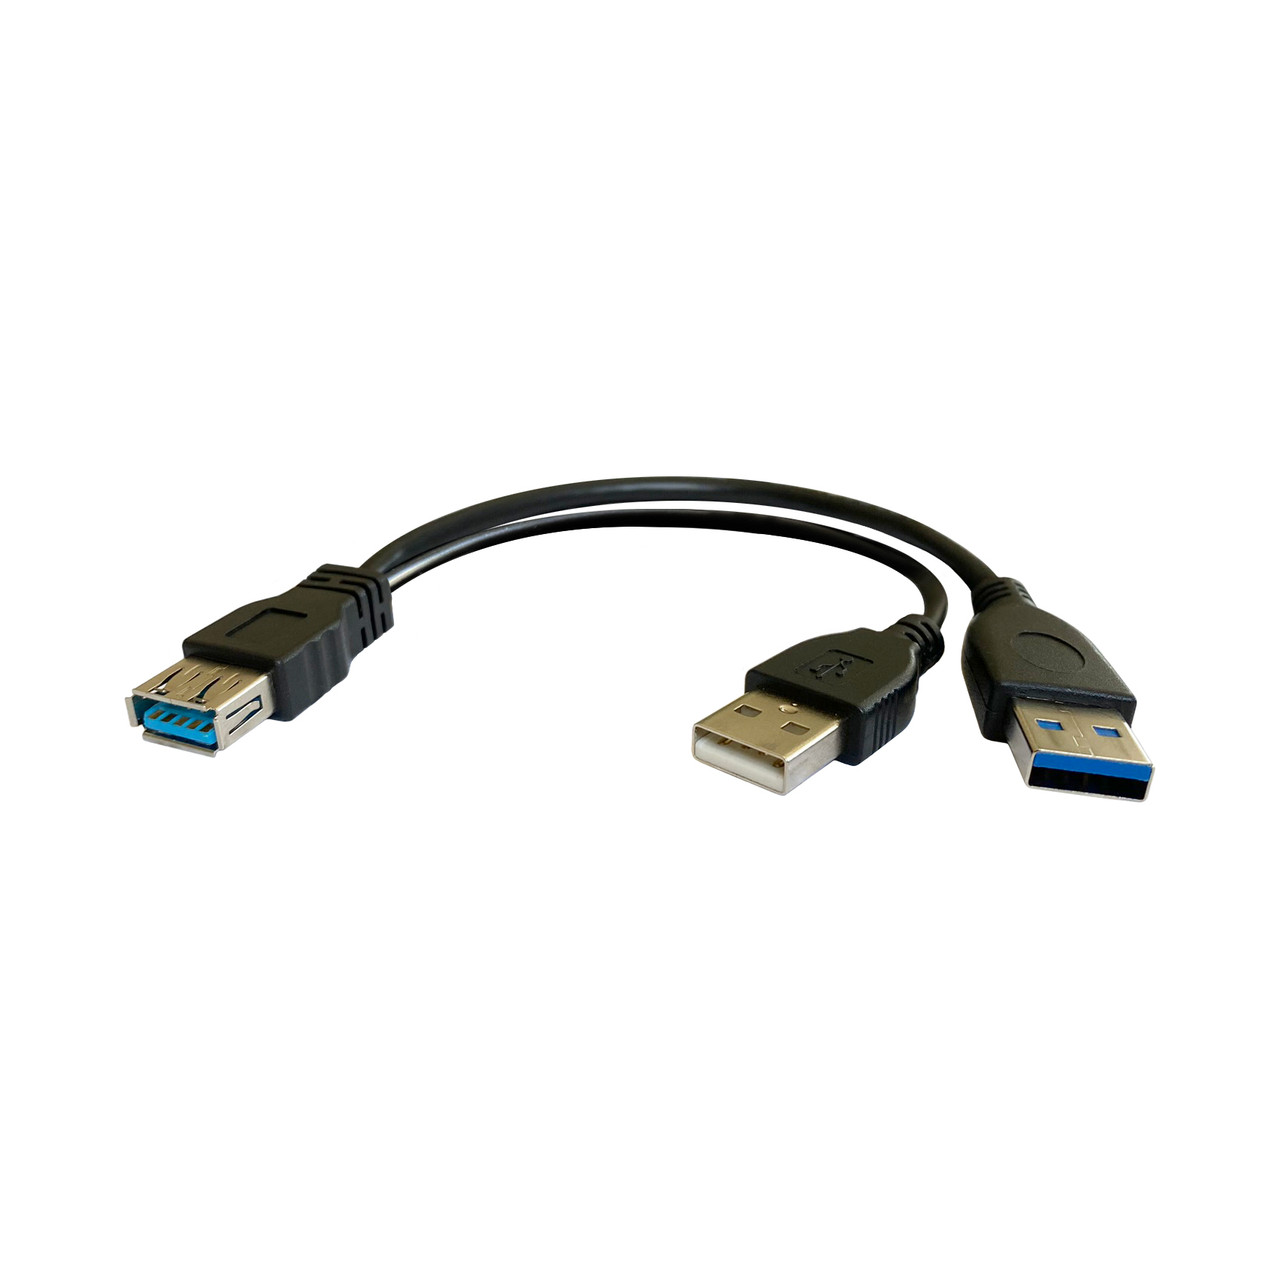 Adaptador USB-C a HDMI + USB Select Power 